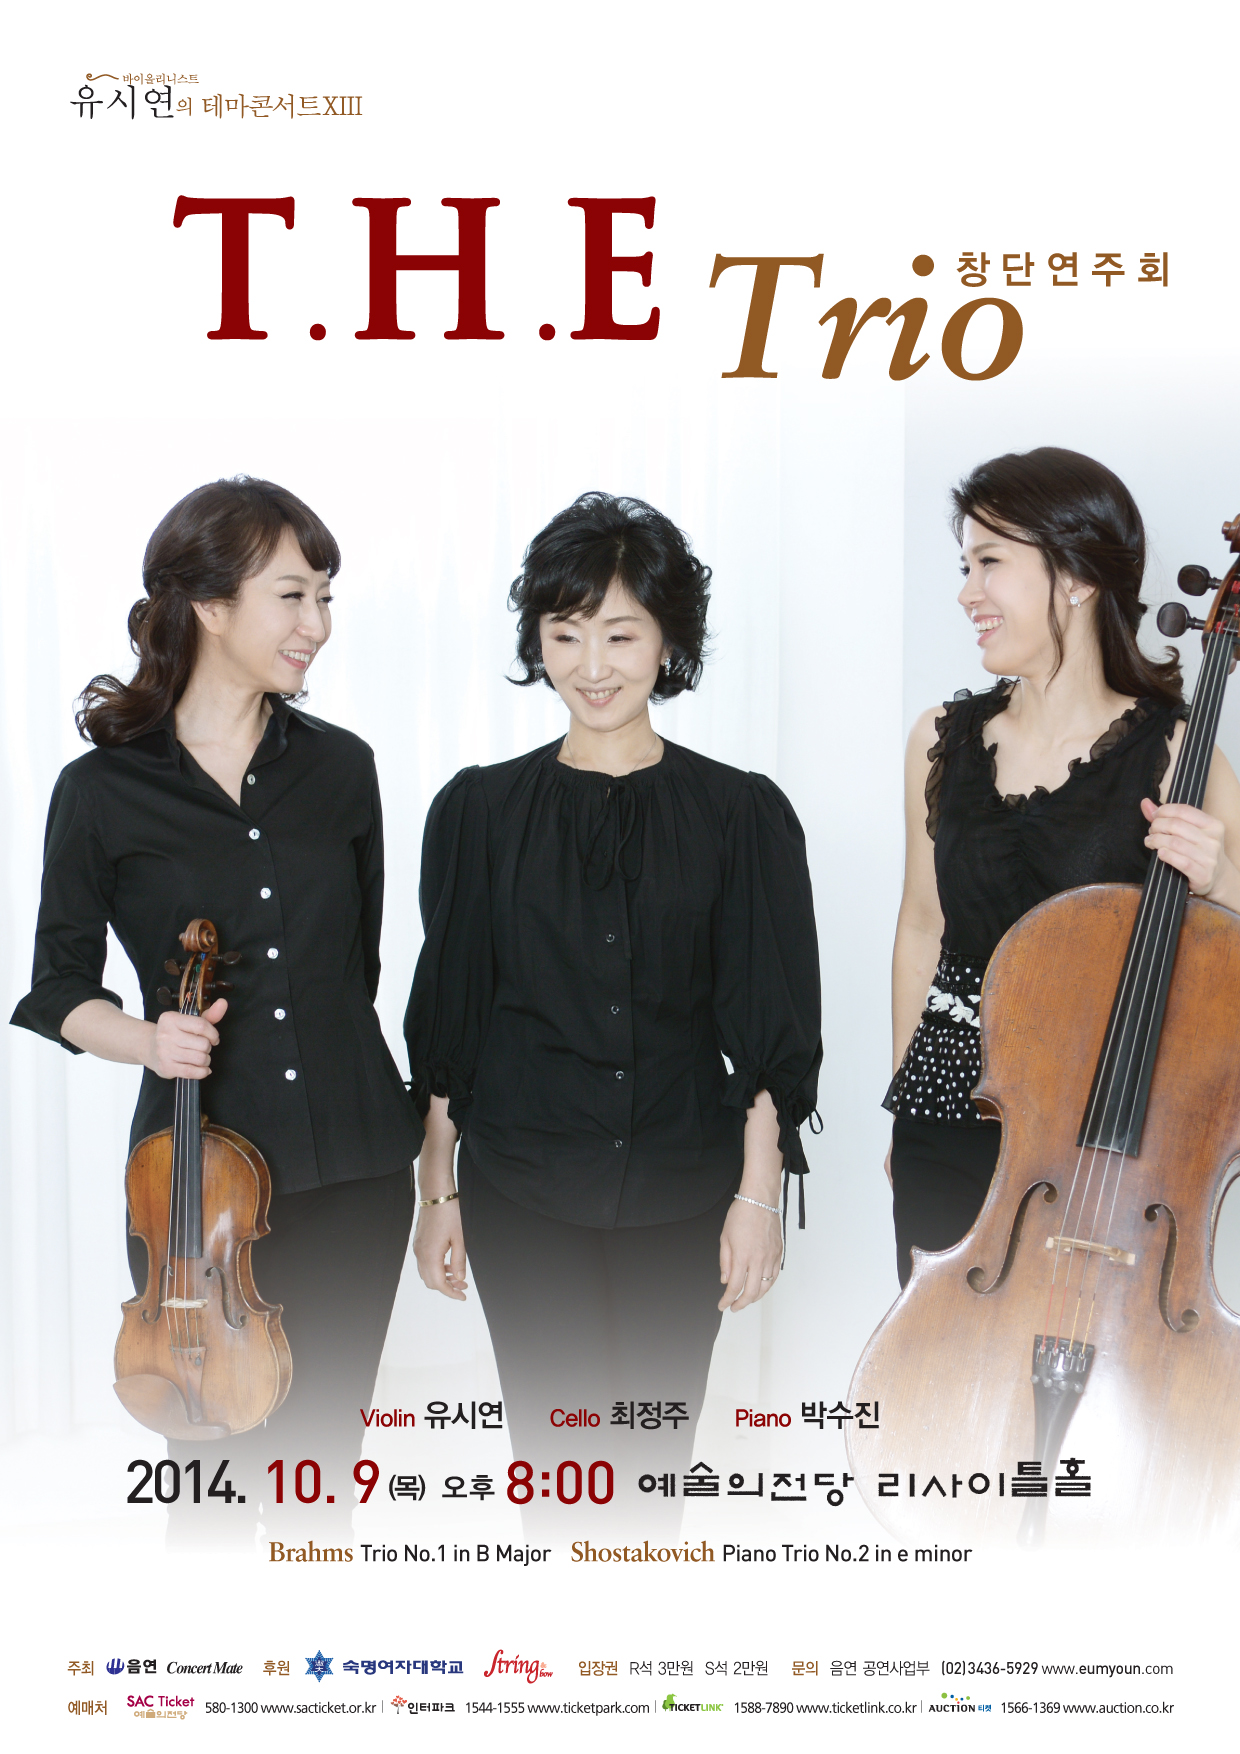 10/9 바이올리니스트 유시연의 테마콘서트 XIII T.H.E Trio 창단연주회  이미지